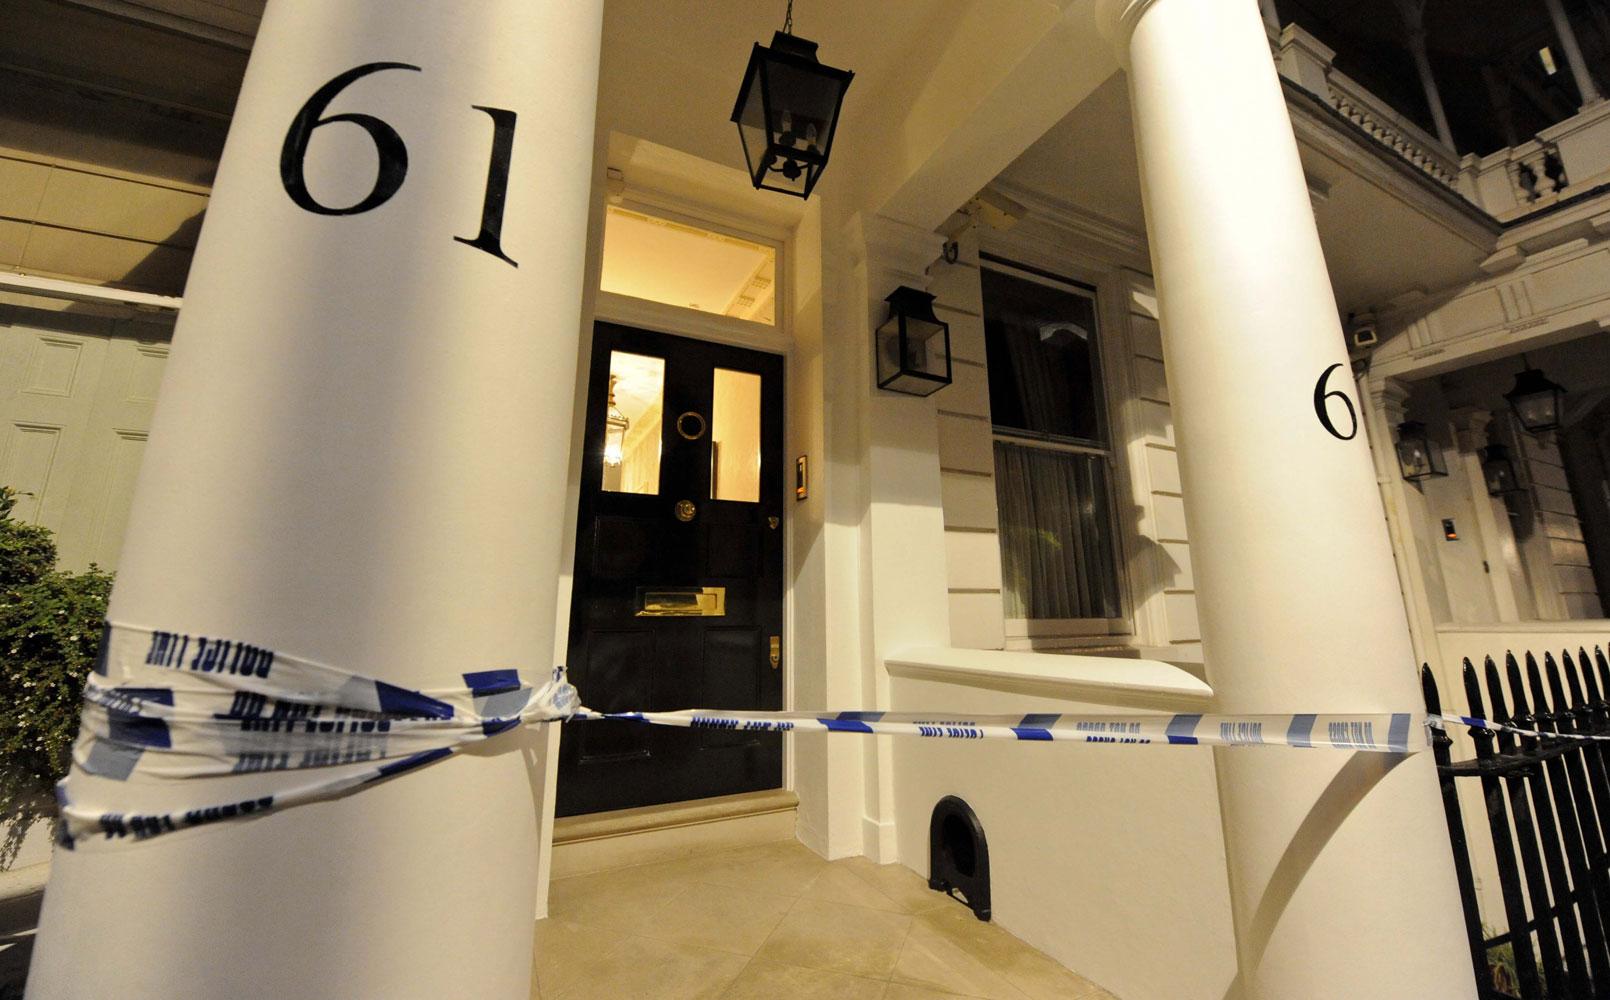 Porten in till paret Rausings exklusiva bostad i London-stadsdelen Belgravia är avspärrad med polistejp.